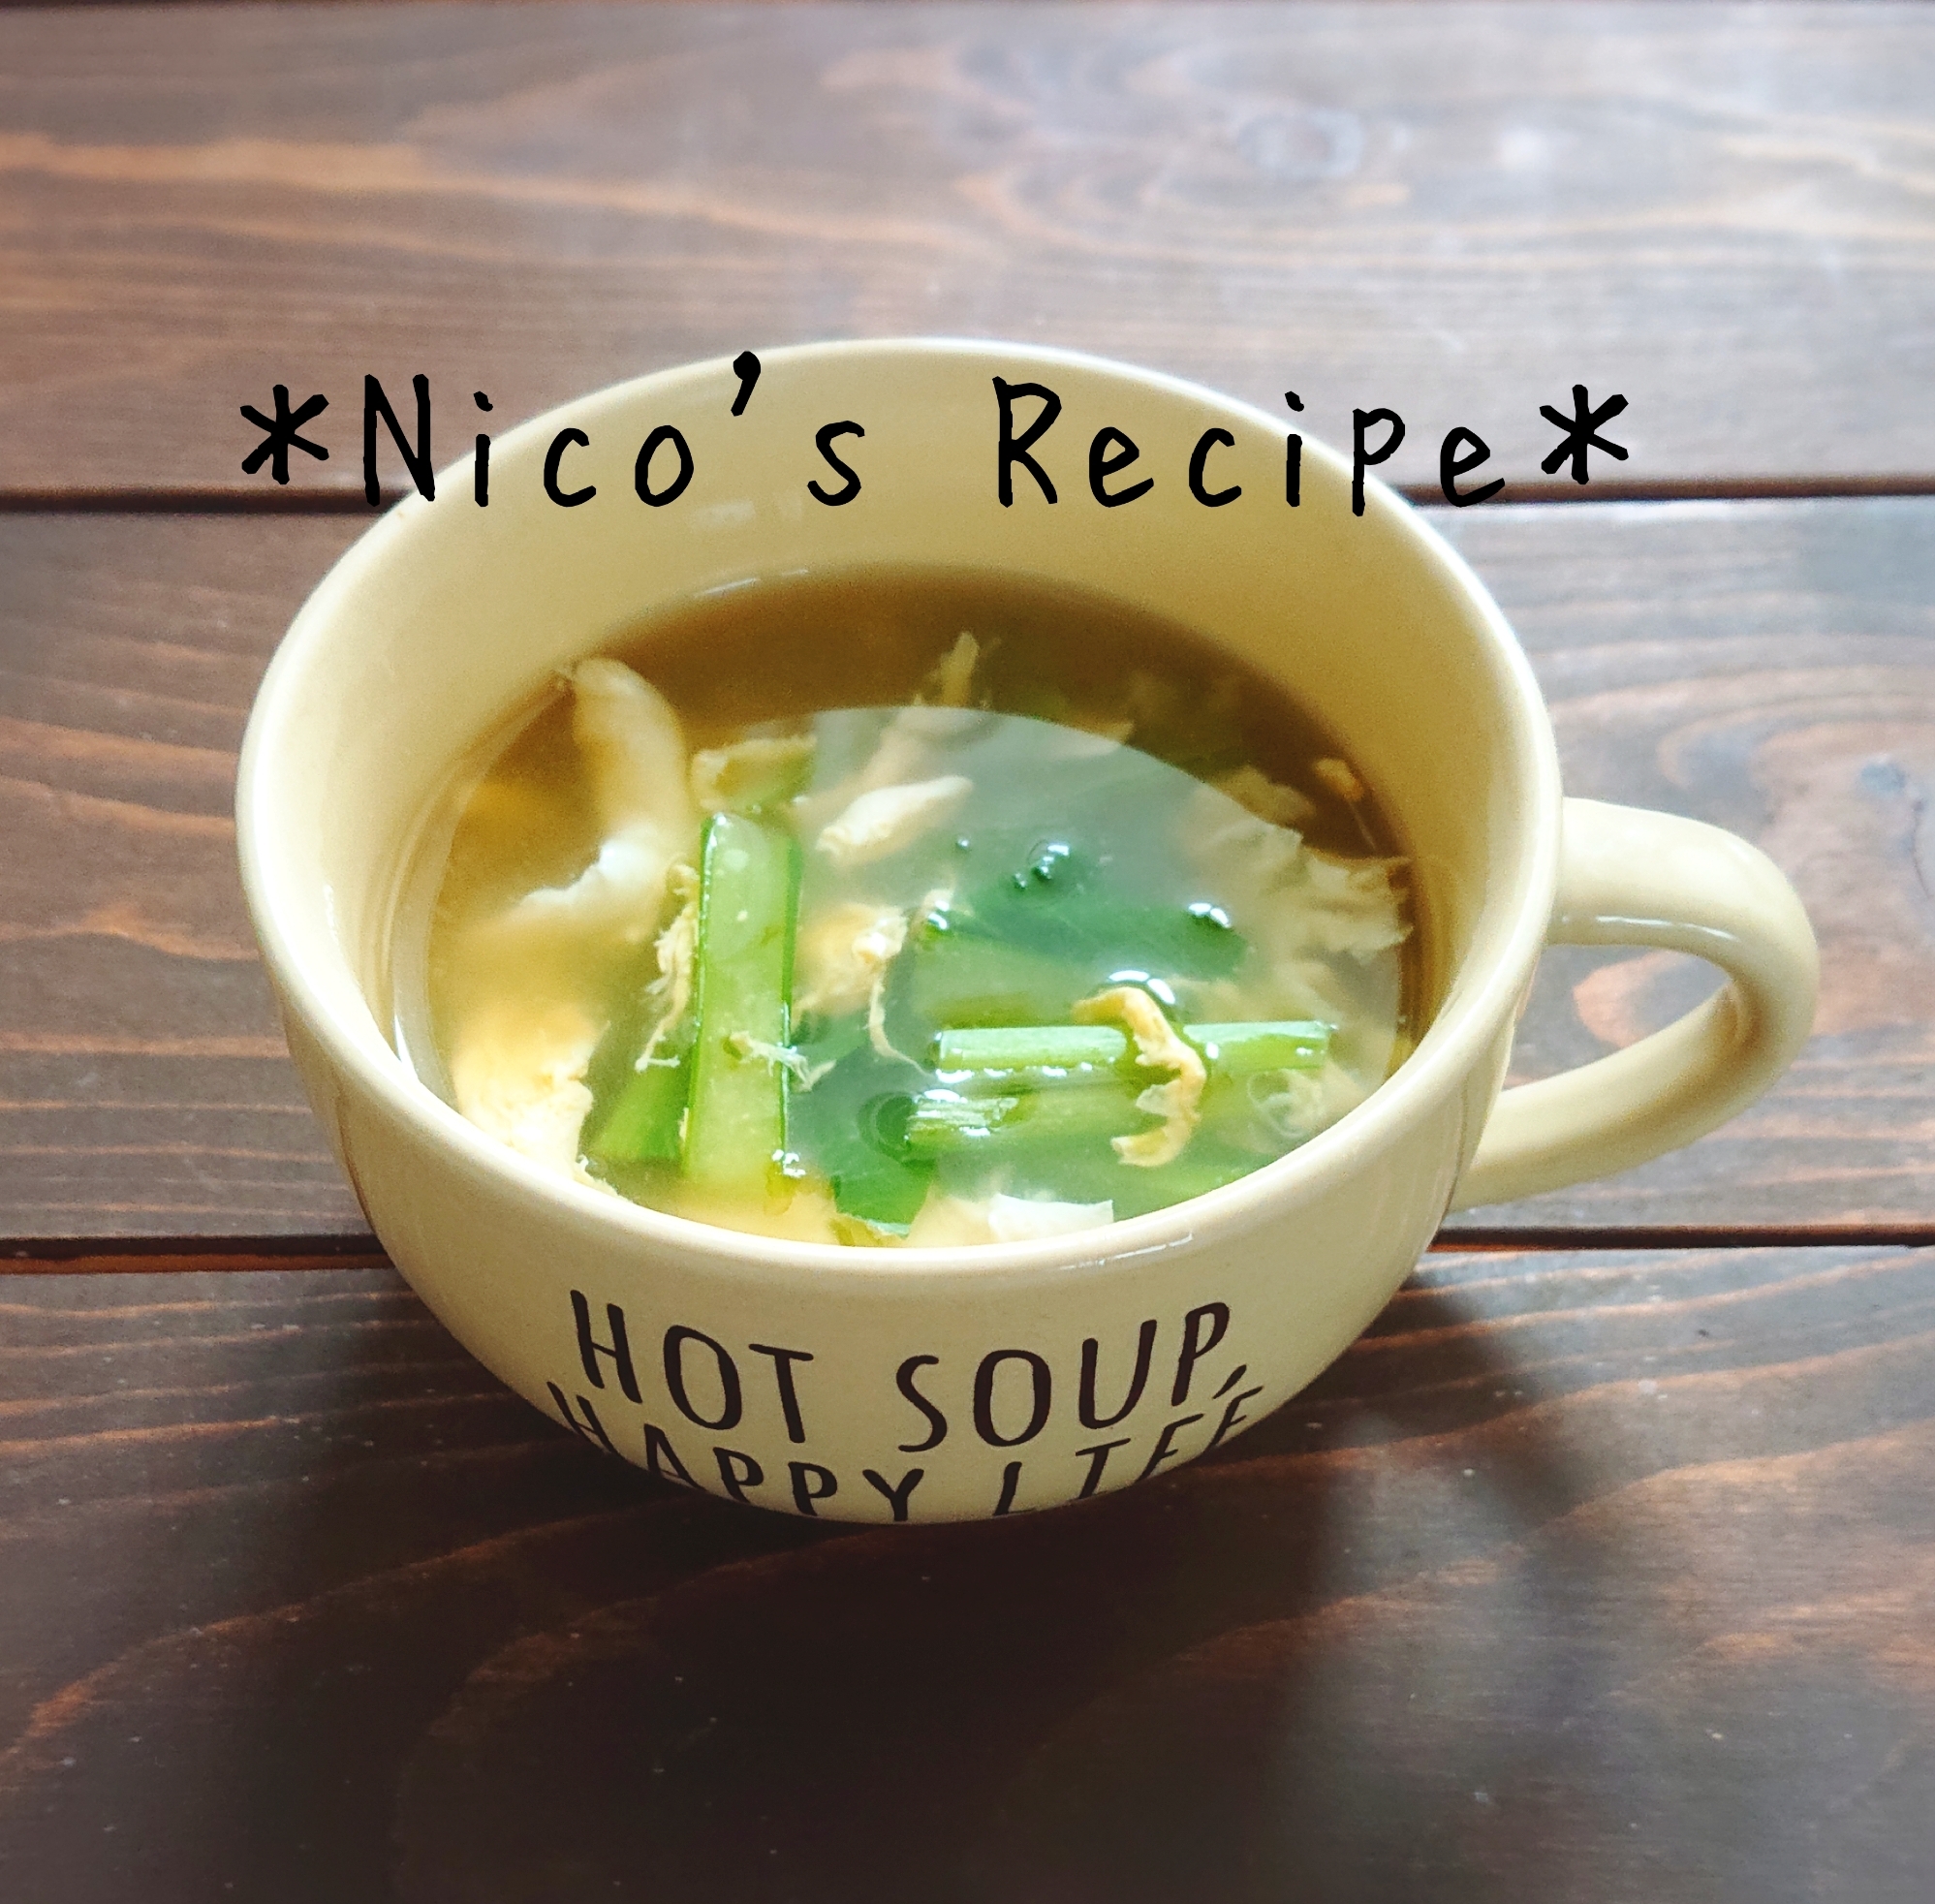 小松菜とあおさの中華スープ